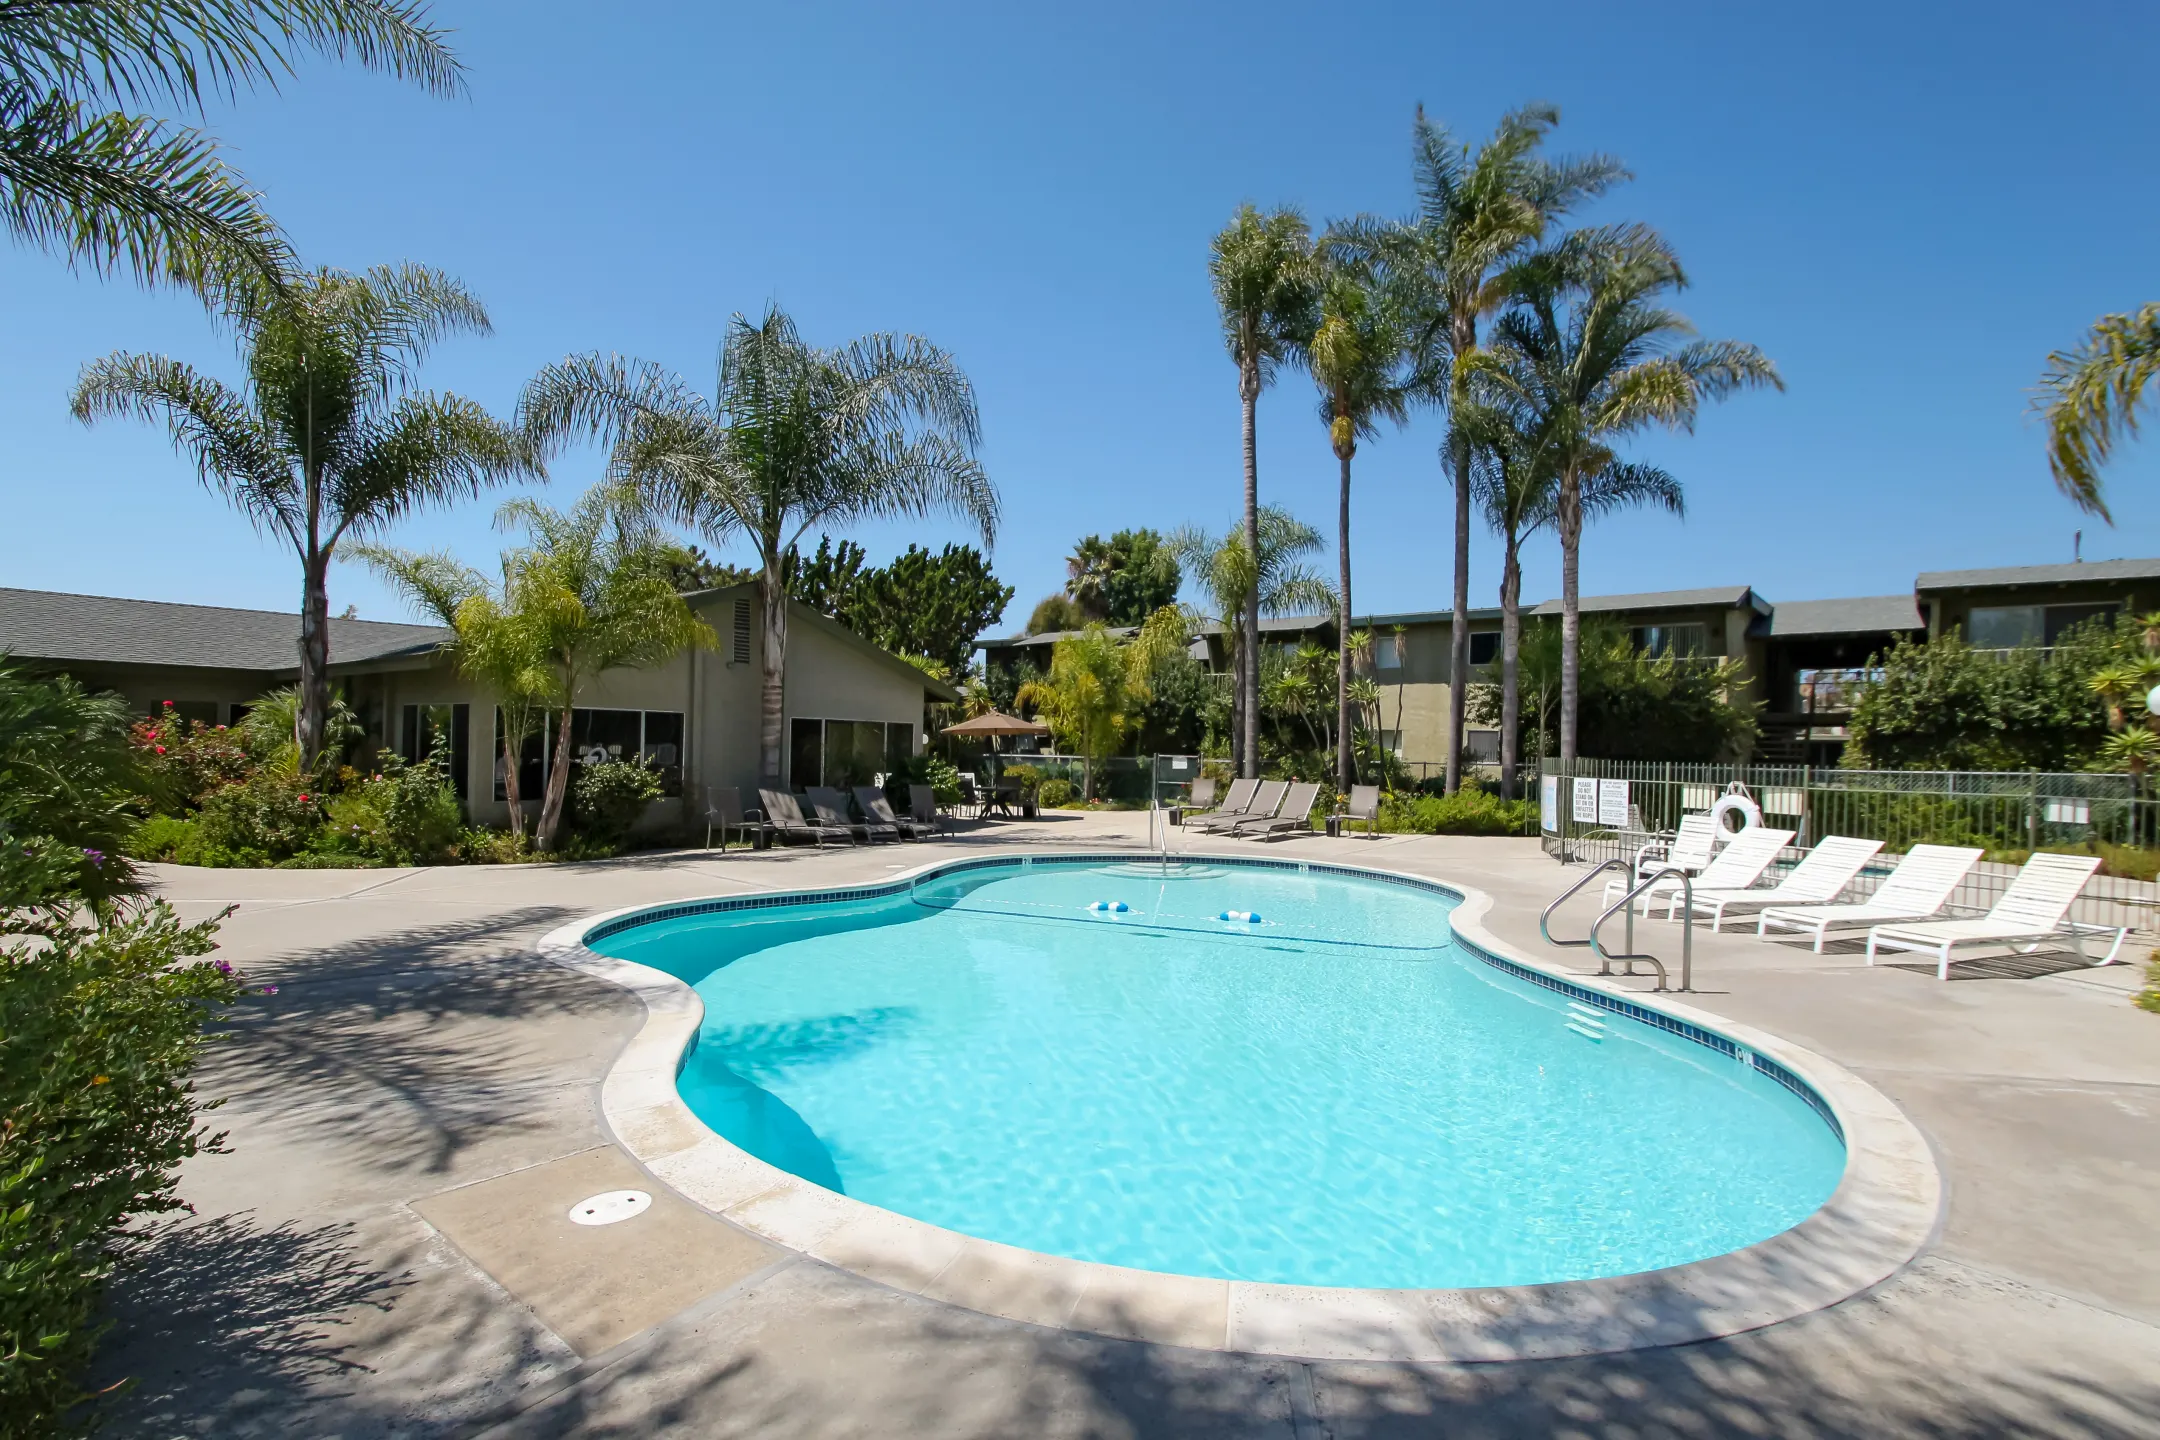 Pool - 1575 Oak Apartment Homes - Vista, CA